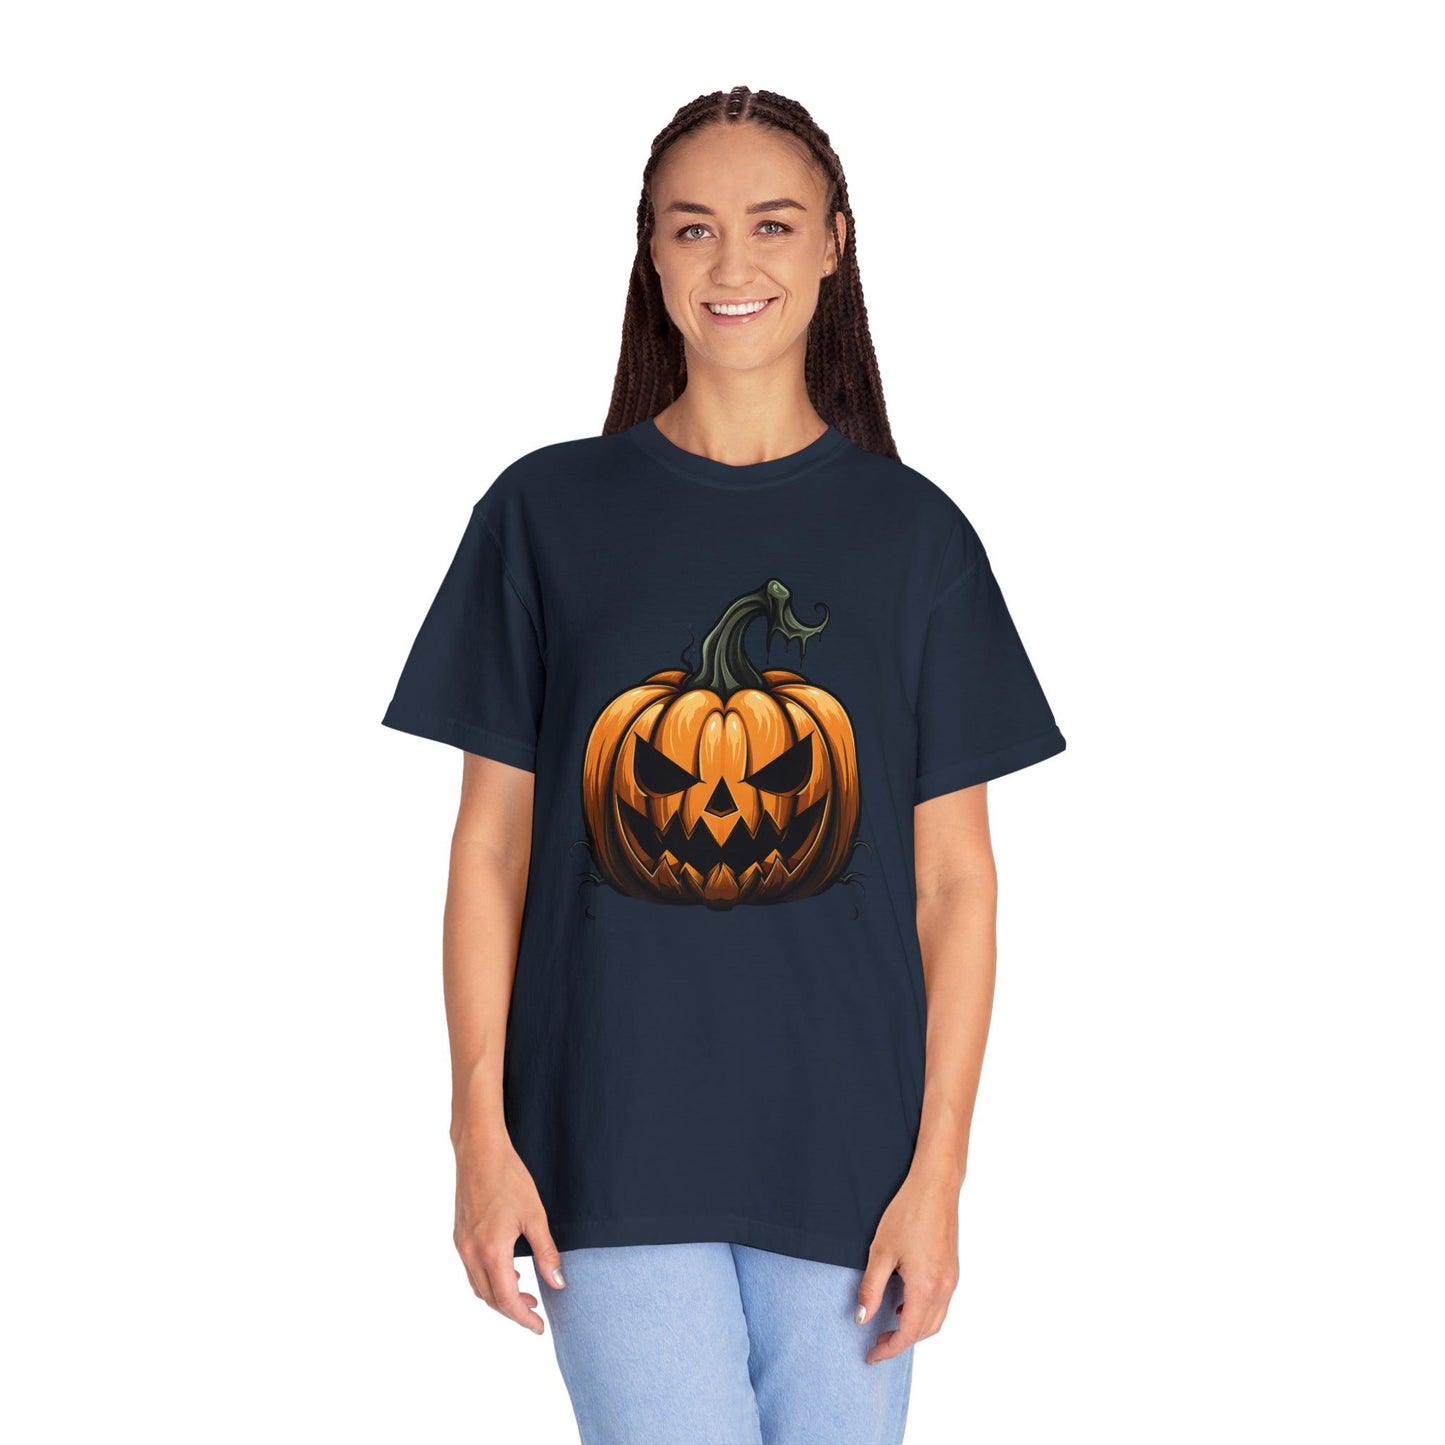 Scary Pumpkin Shirt Fall Halloween Shirt Halloween Costume Pumpkin T Shirt - Pumpkin Tee fall tshirt Fall Shirt Halloween Gift Fall Top